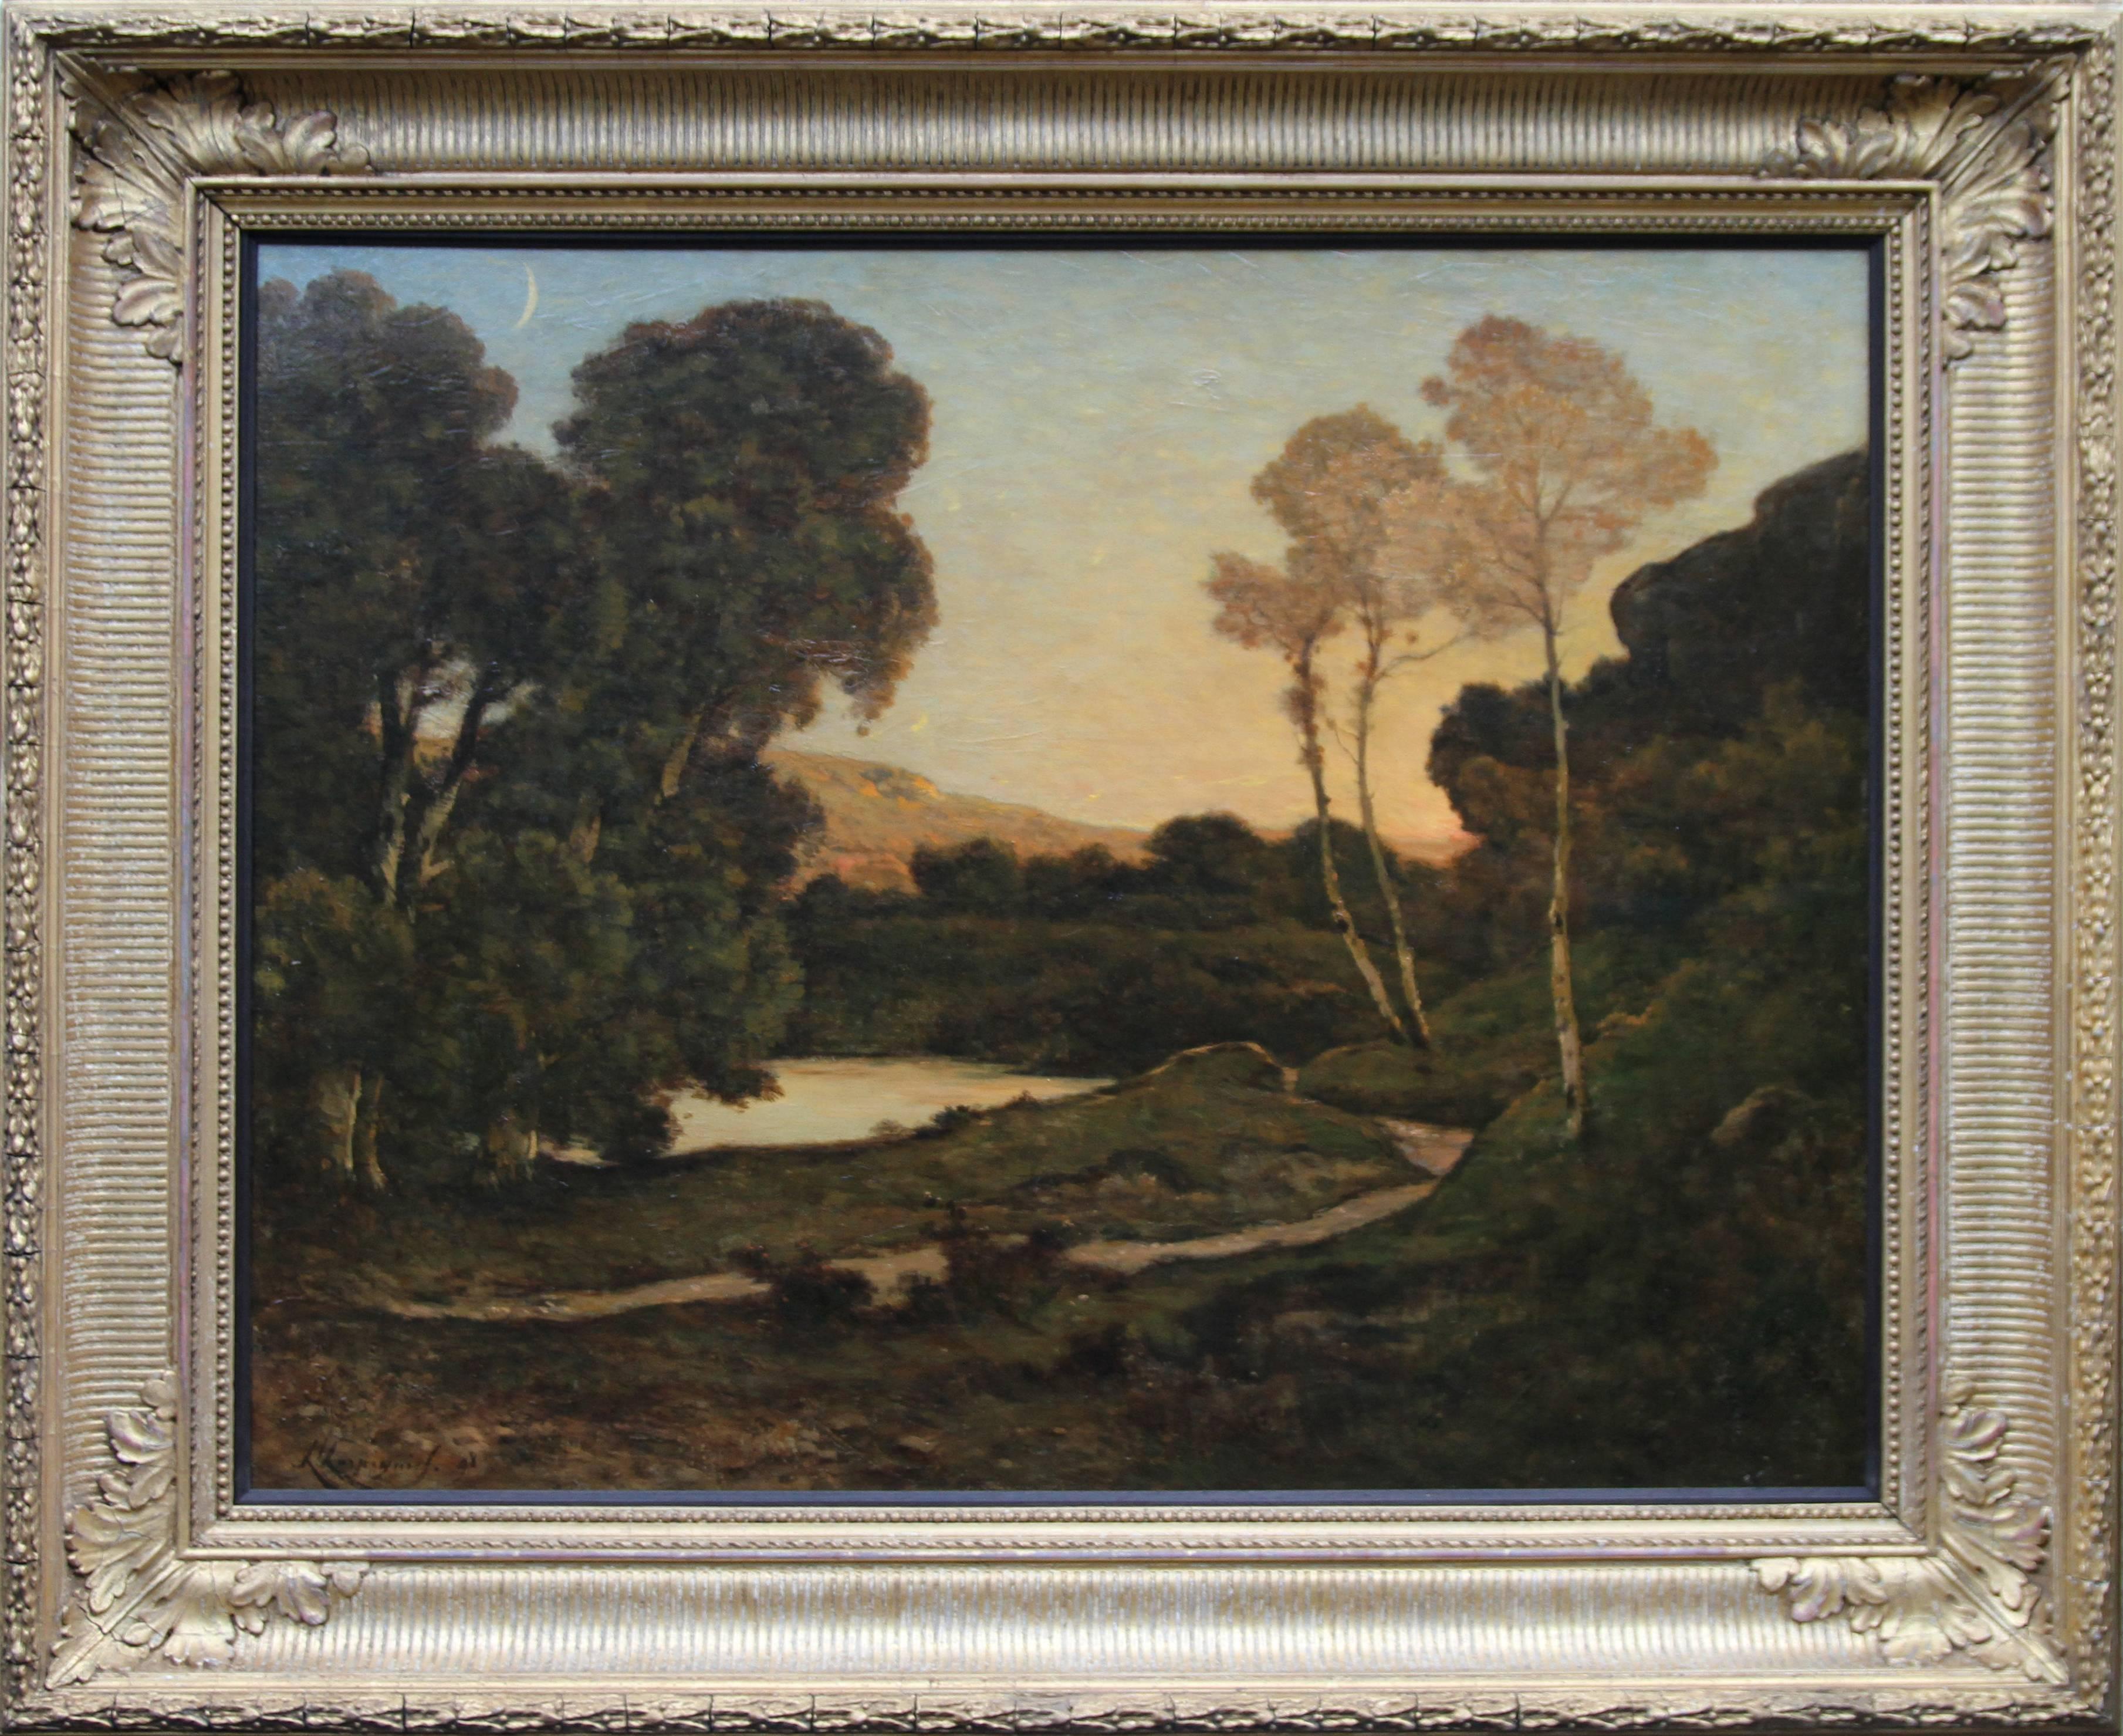 Henri Joseph Harpignies Landscape Painting - Sunset Landscape- French 19th century Barbizon art river landscape oil painting 